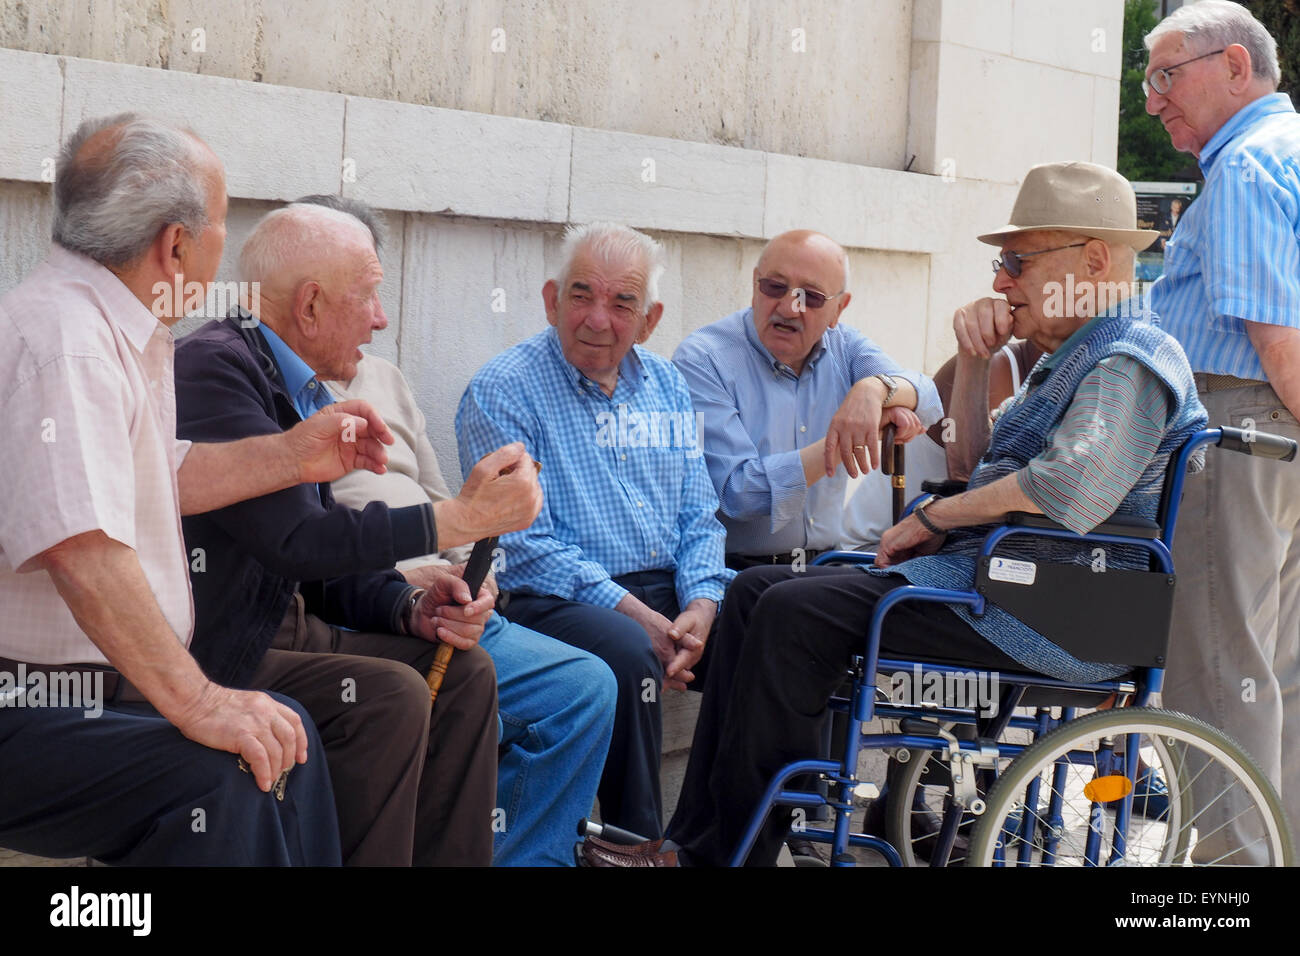 Messieurs âgés ayant une discussion animée. Banque D'Images